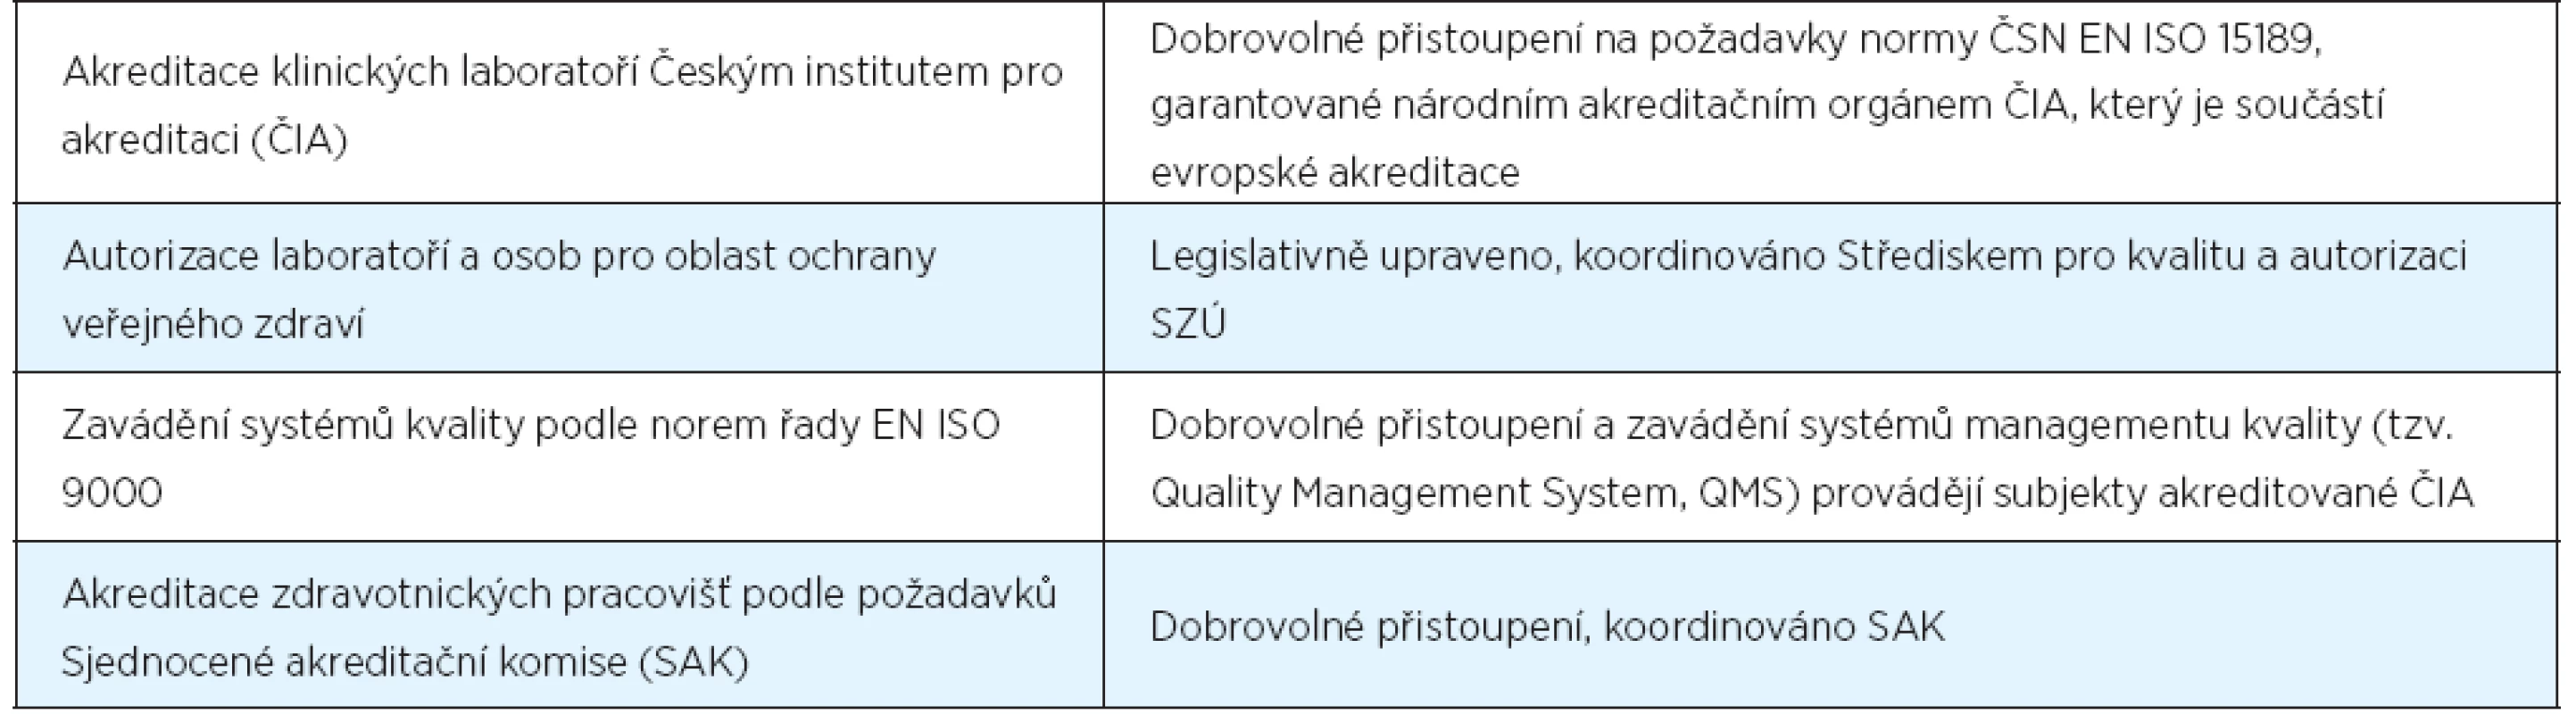 Přehled dobrovolných aktivit ke zvyšování kvality zdravotní péče v ČR